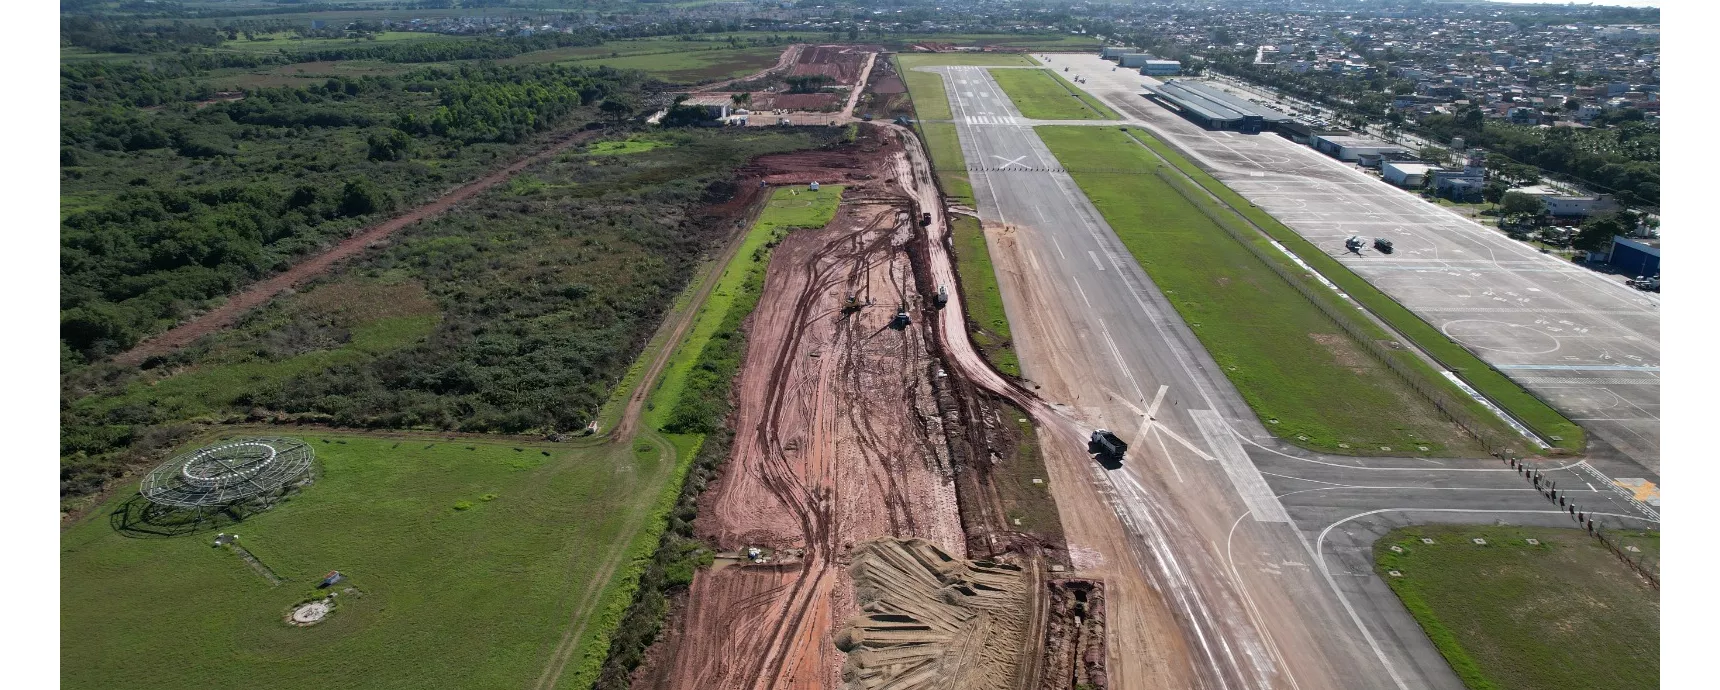 Aeroporto de Macaé vai operar com duas pistas após conclusão da obra